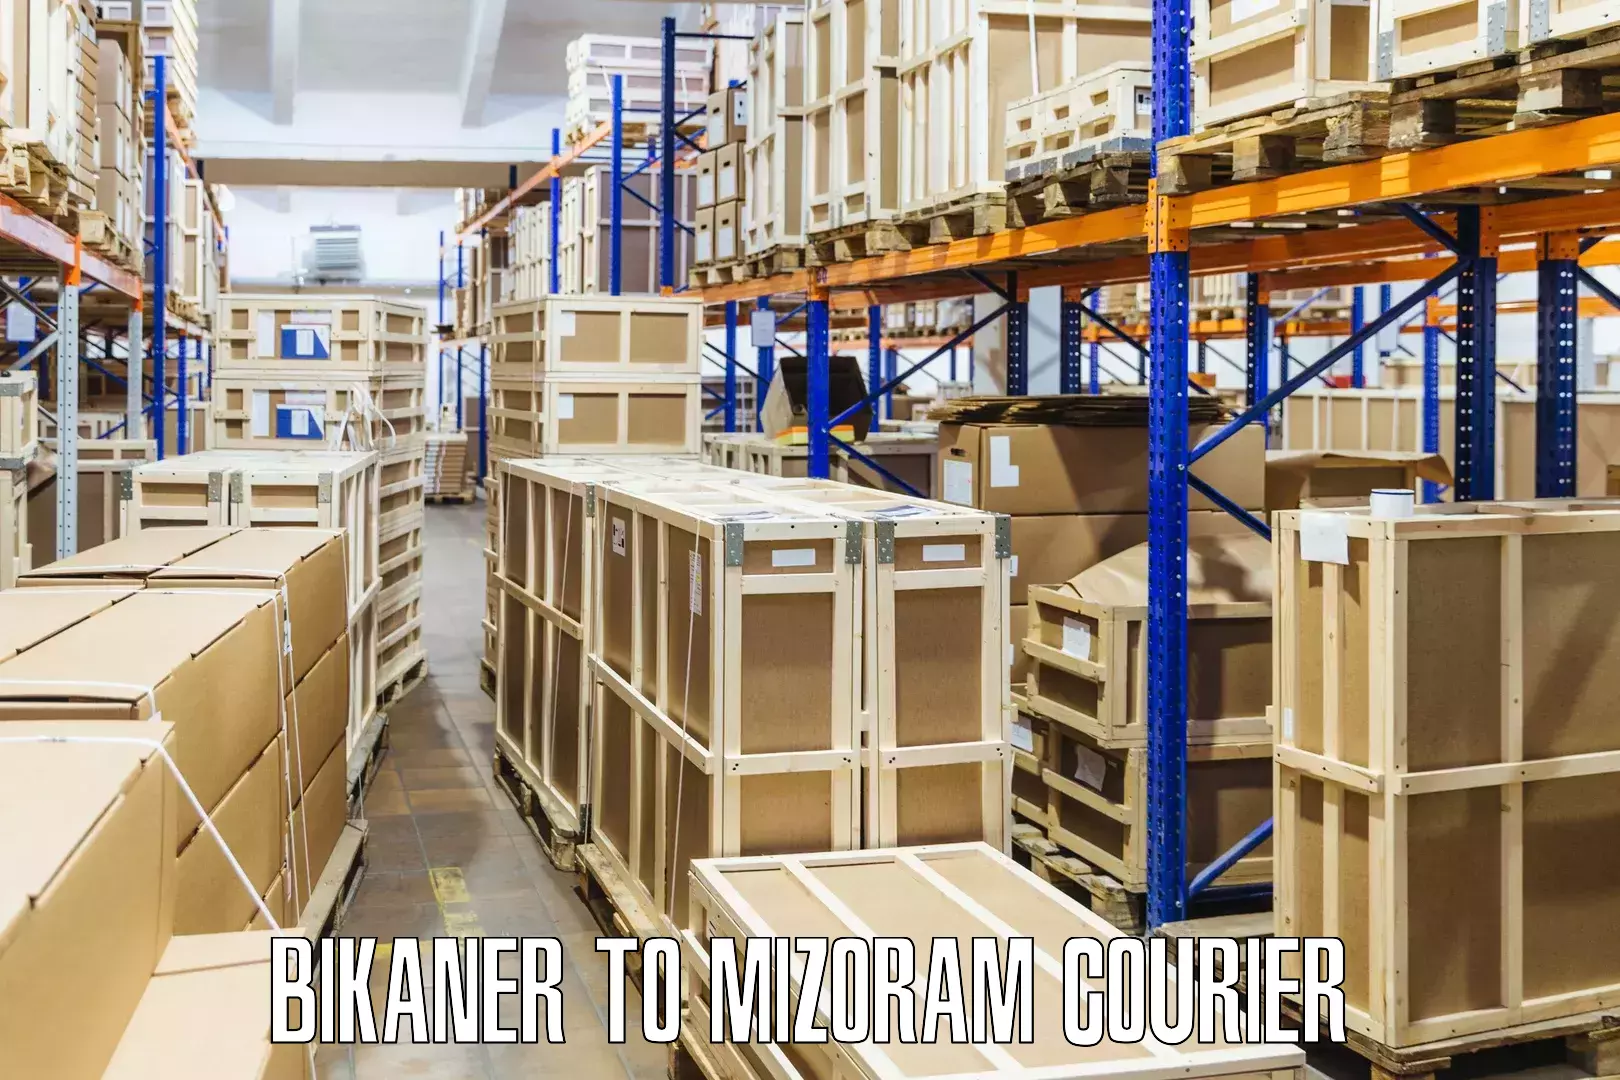 High-capacity shipping options Bikaner to Darlawn